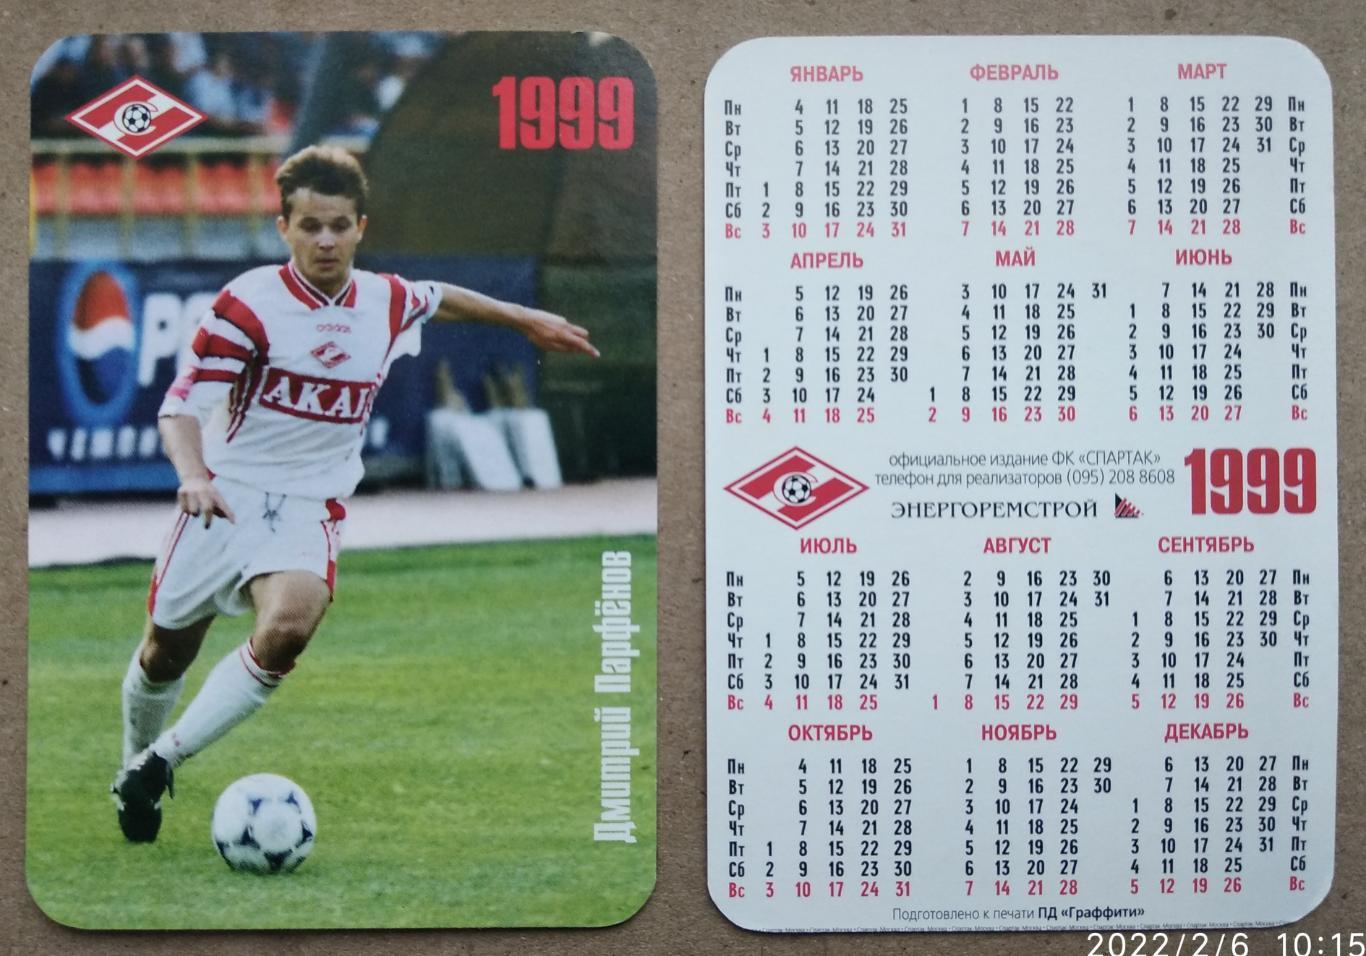 Спартак Москва - Парфенов , календарик на 1999 год, официальное издание клуба